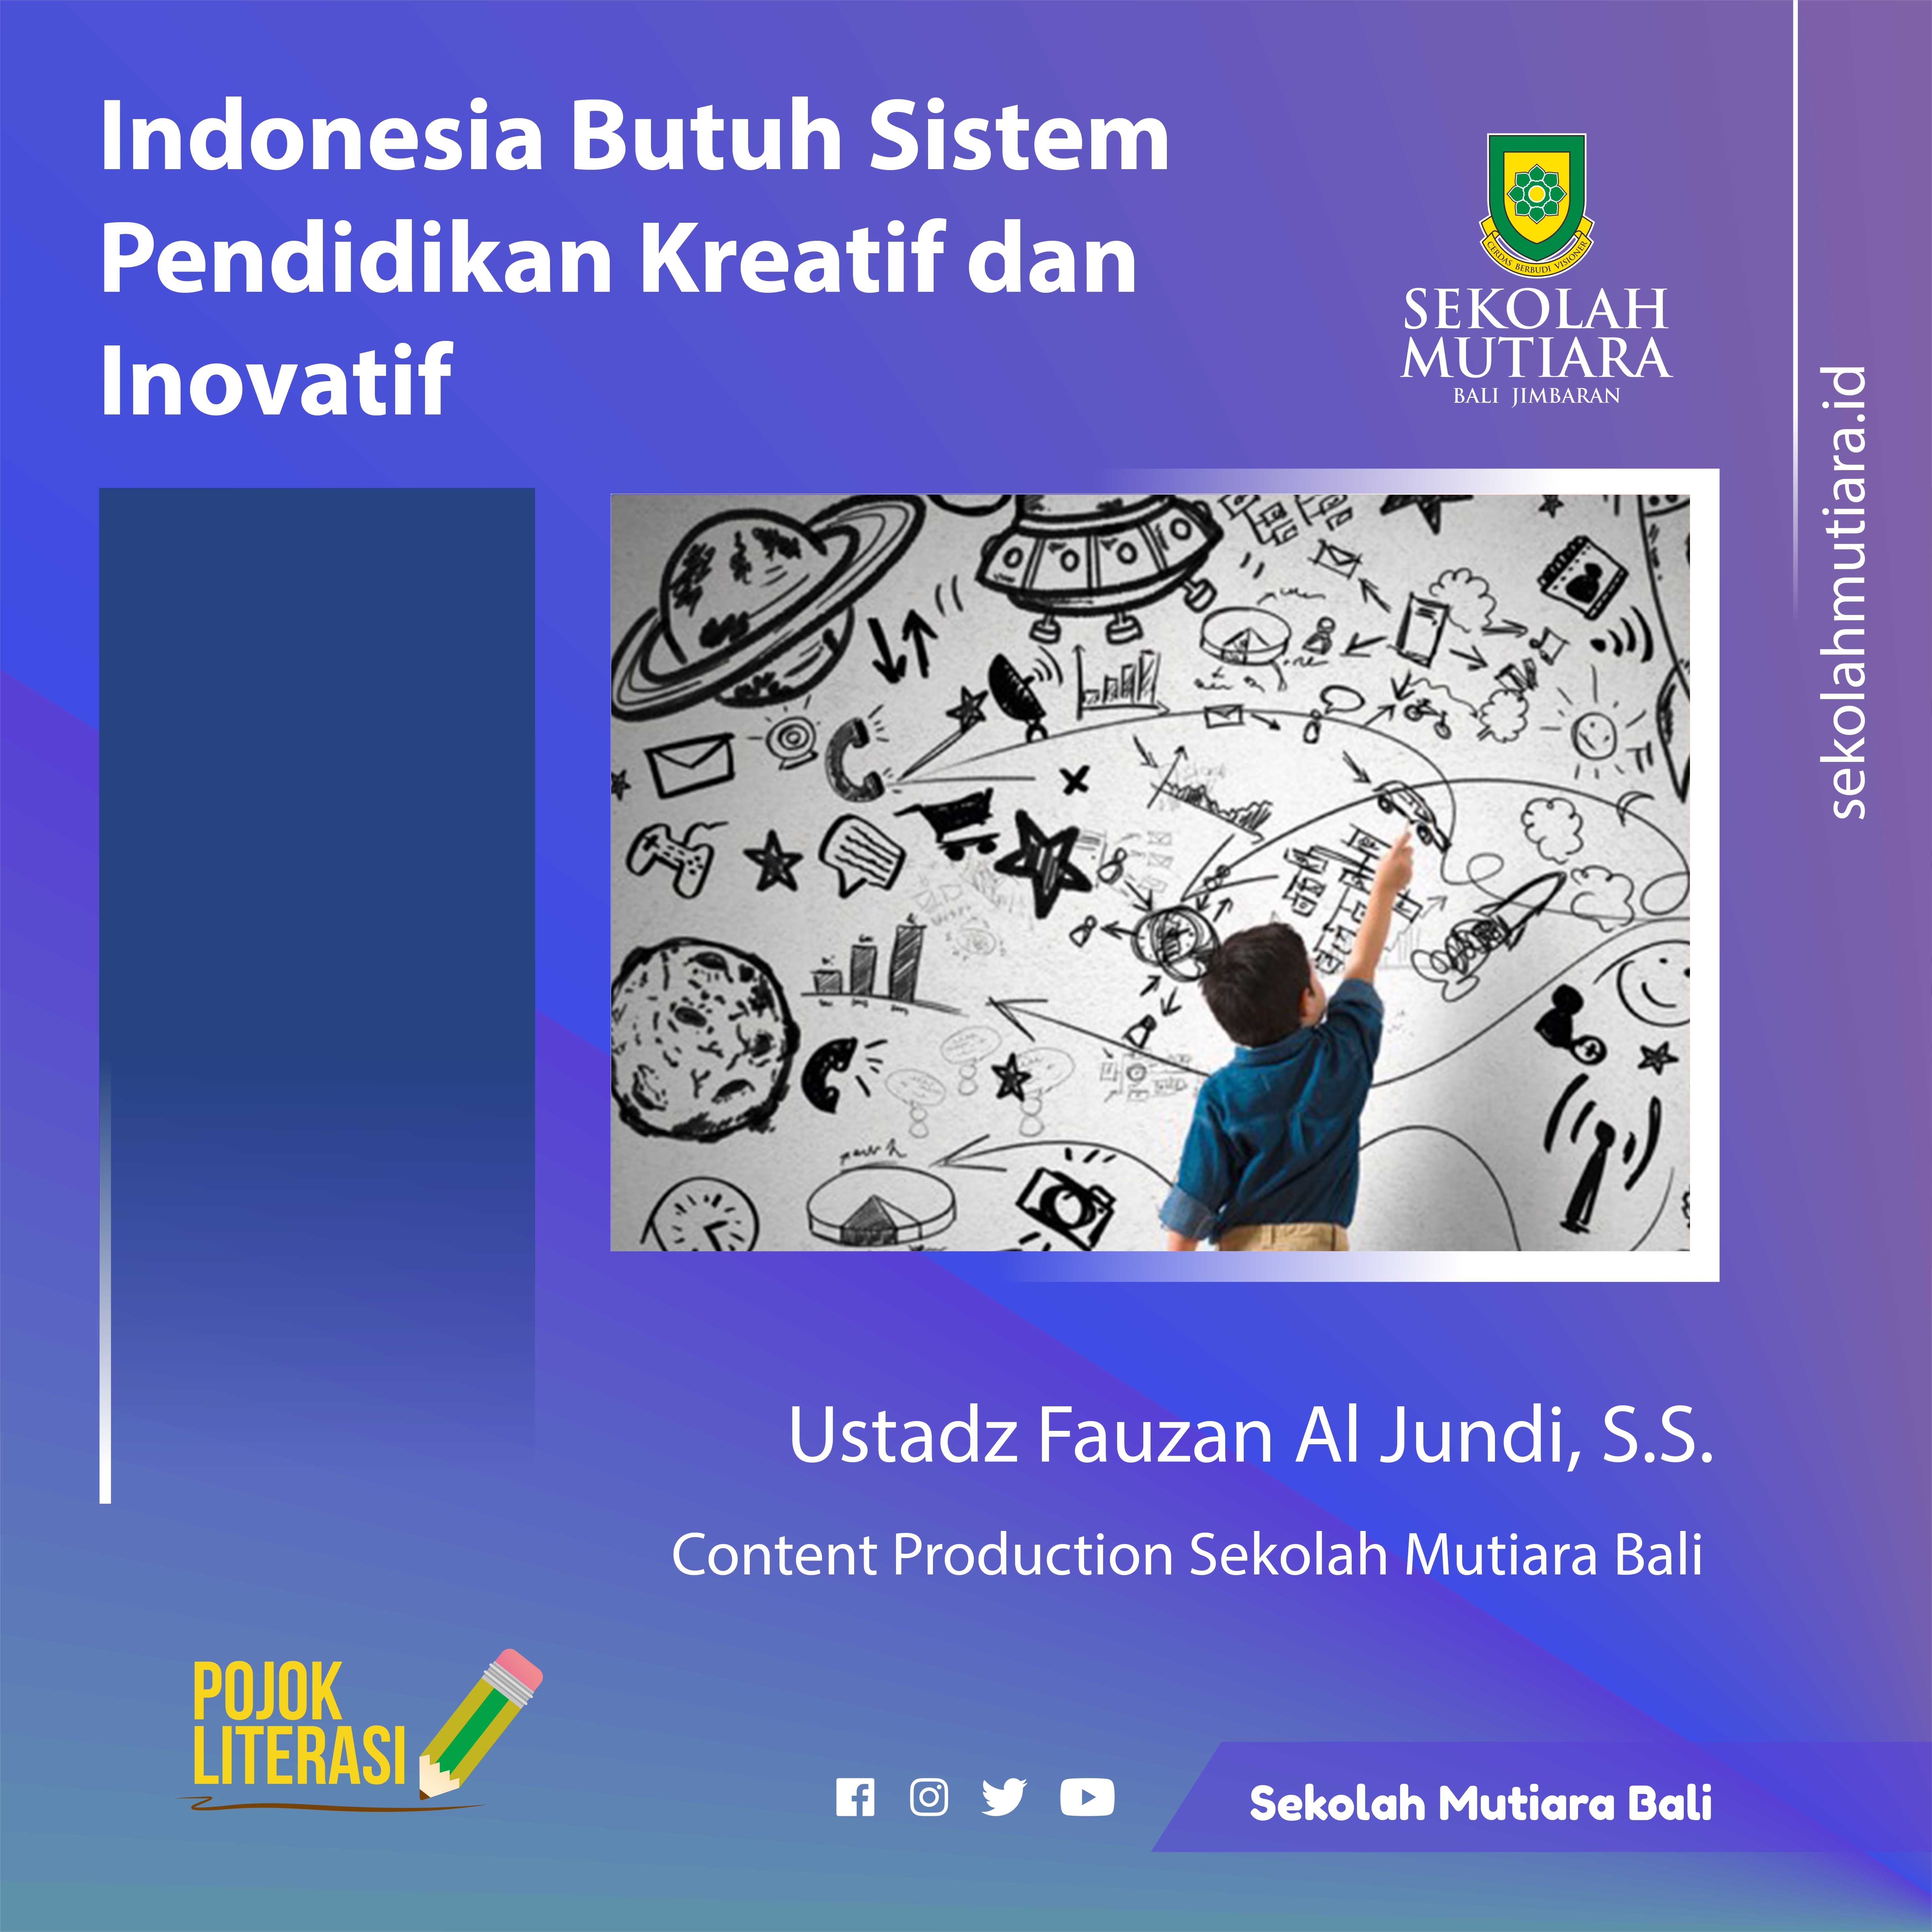 Indonesia Butuh Sistem Pendidikan Kreatif dan Inovatif